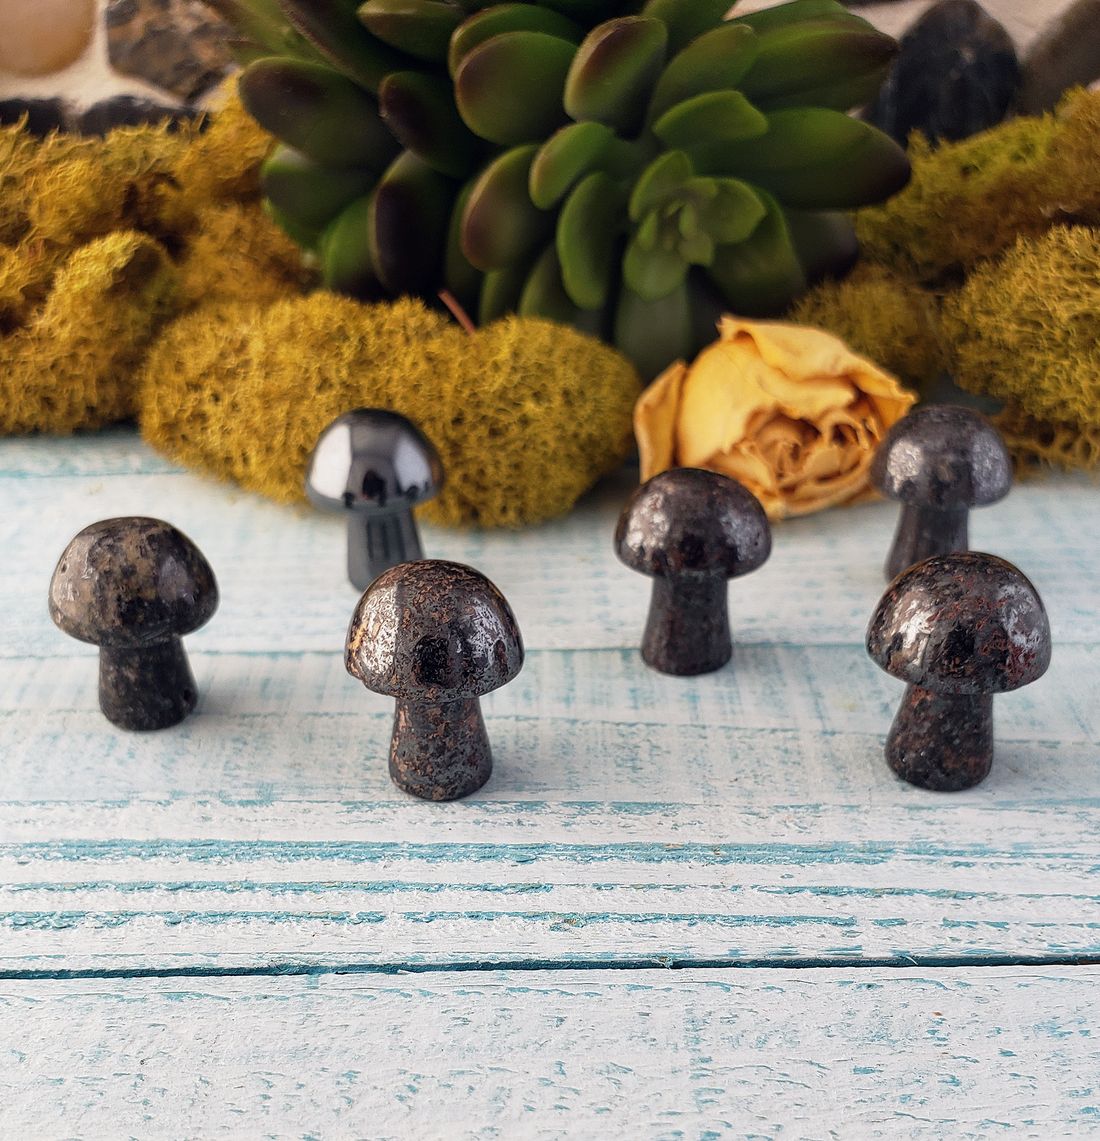 Hematite Gemstone Toadstool Mushroom Carving - Mini Shroom!